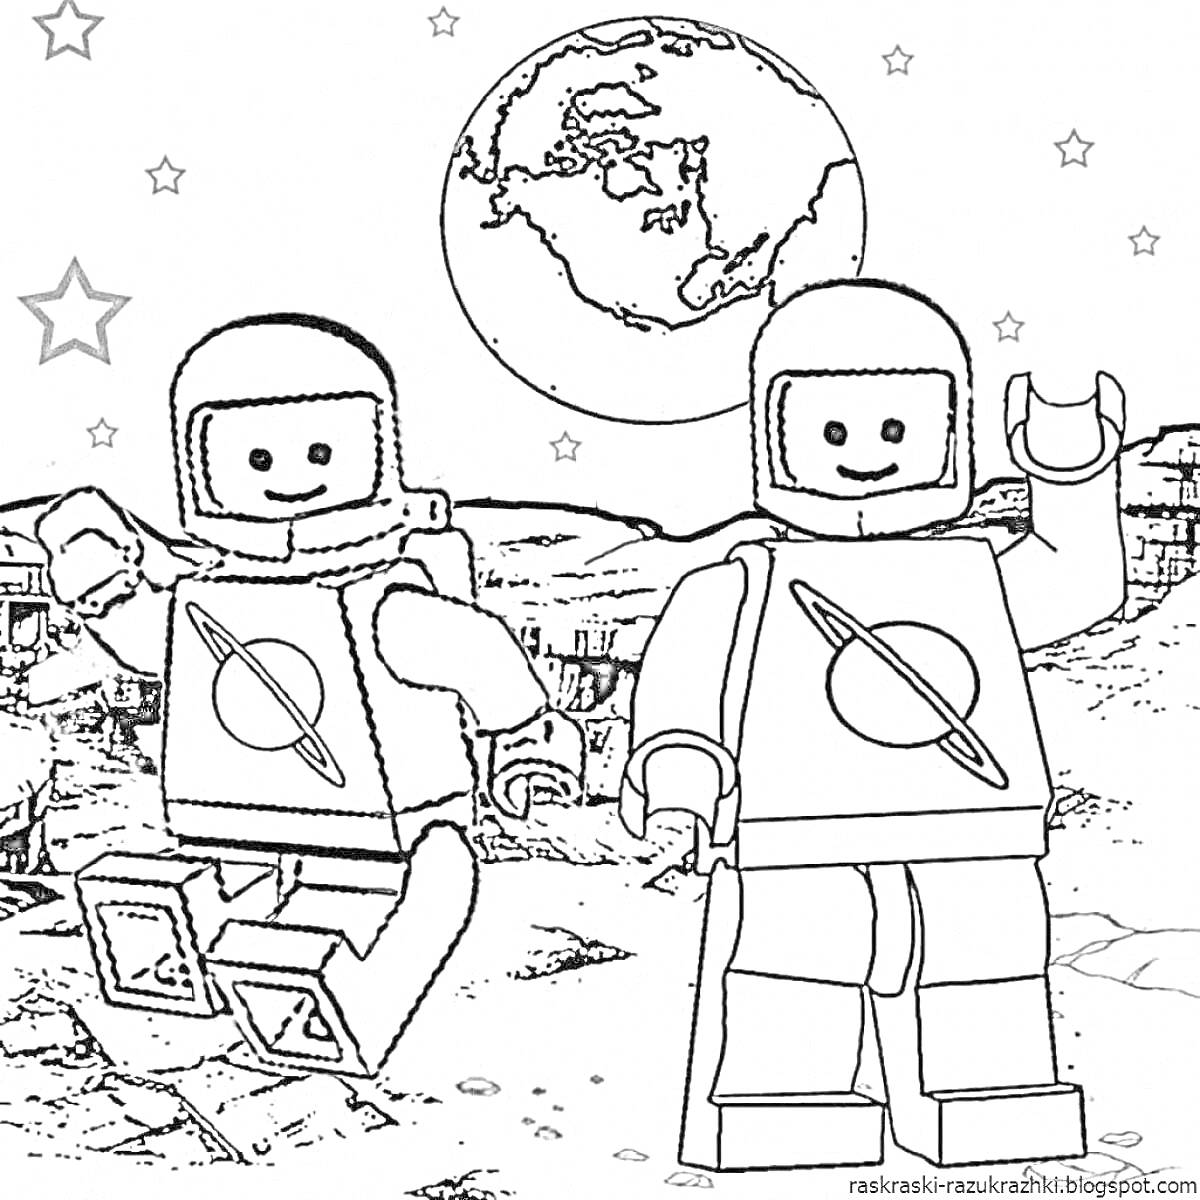 Раскраска Лего астронавты на Луне с Землёй на фоне